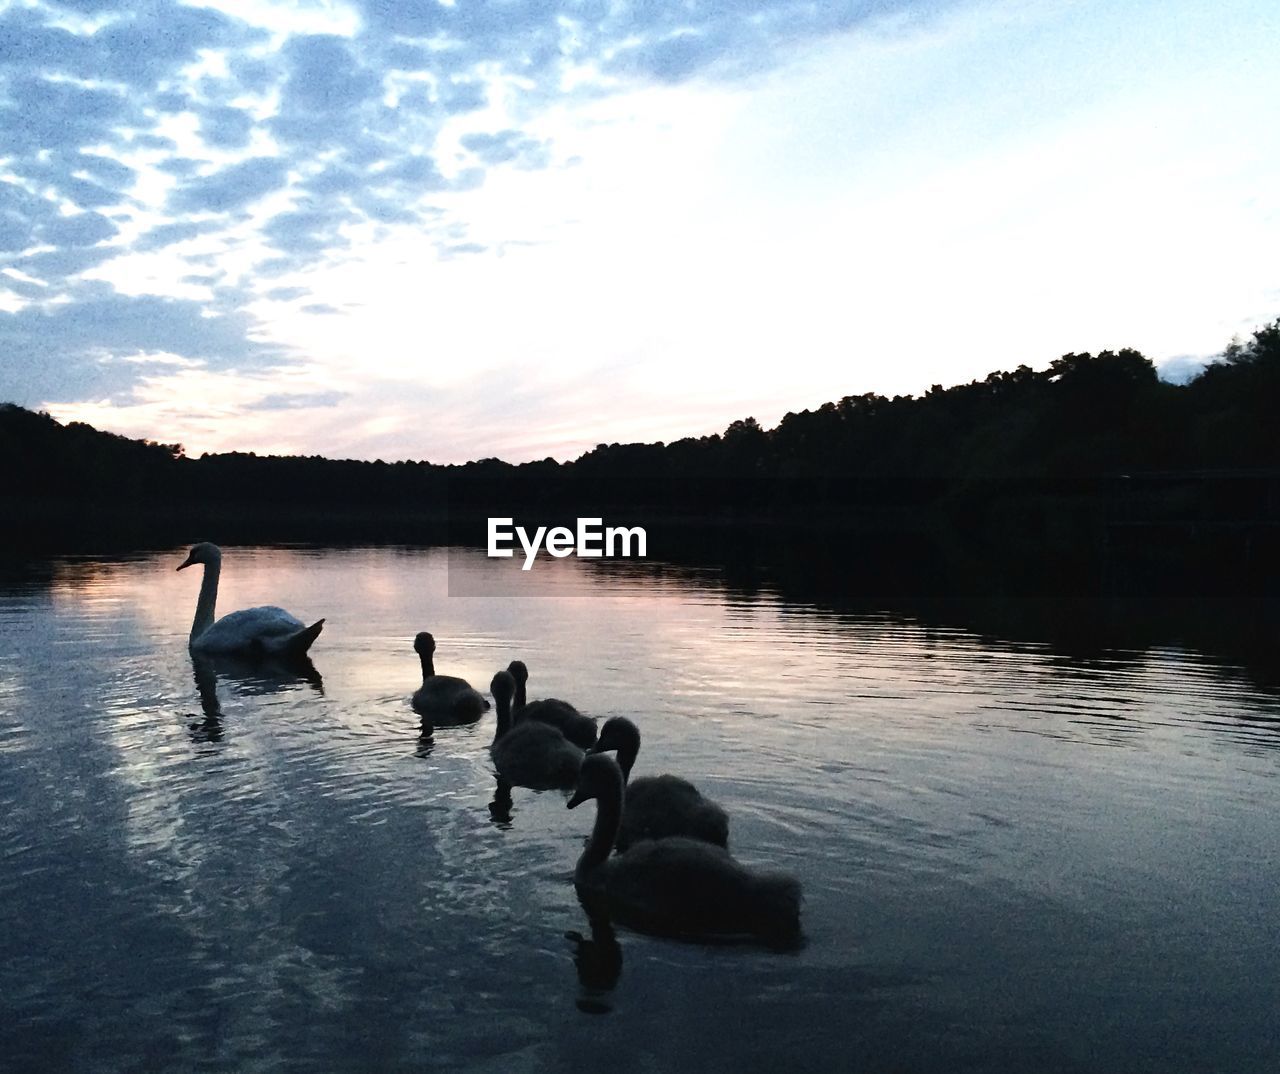 Swans swimming on lake at sunset